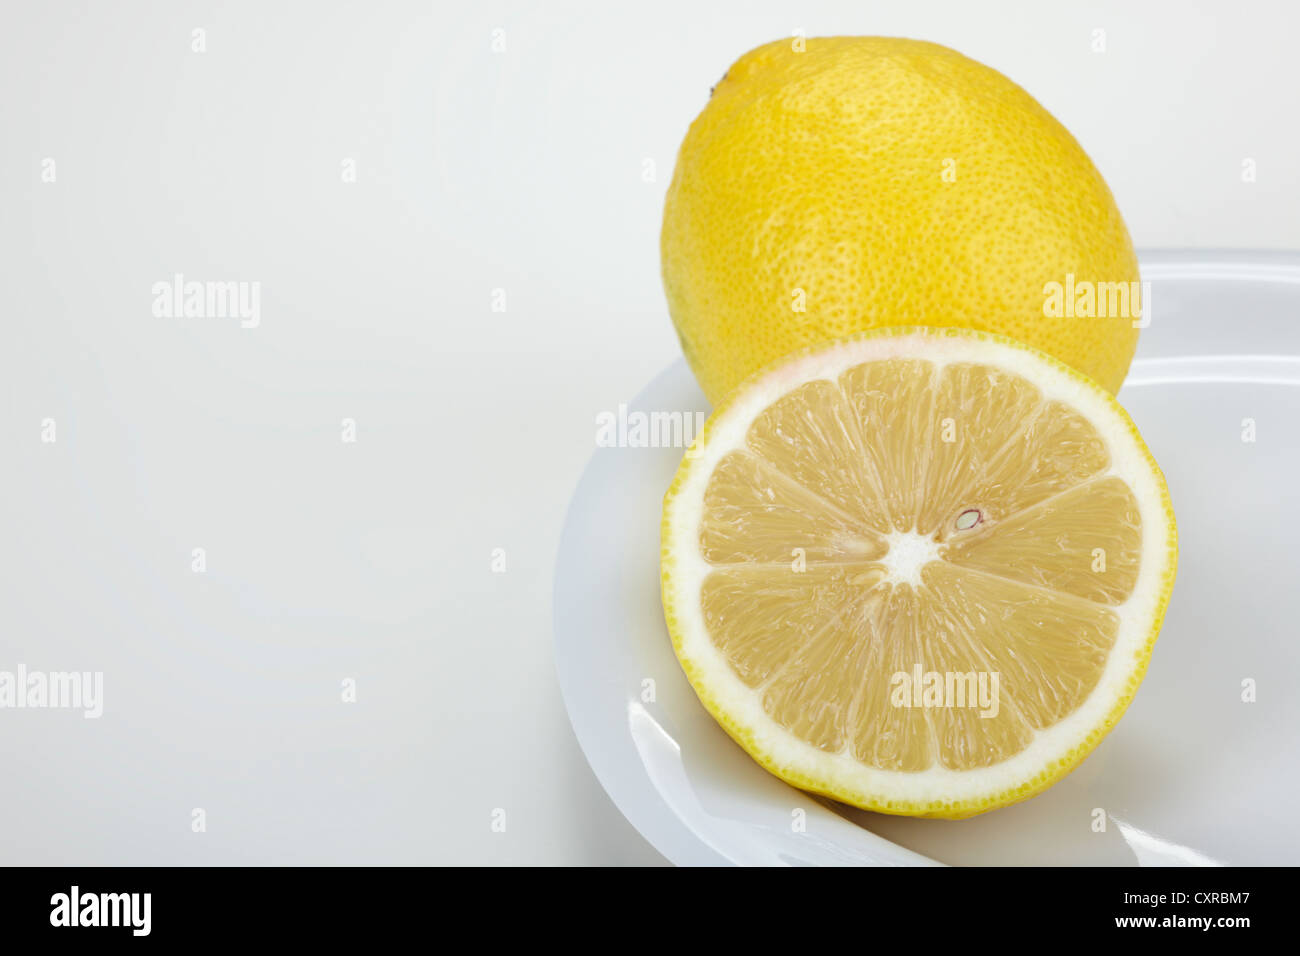 Limón (Citrus limon), enteras y cortadas por la mitad, sobre una placa blanca. Foto de stock